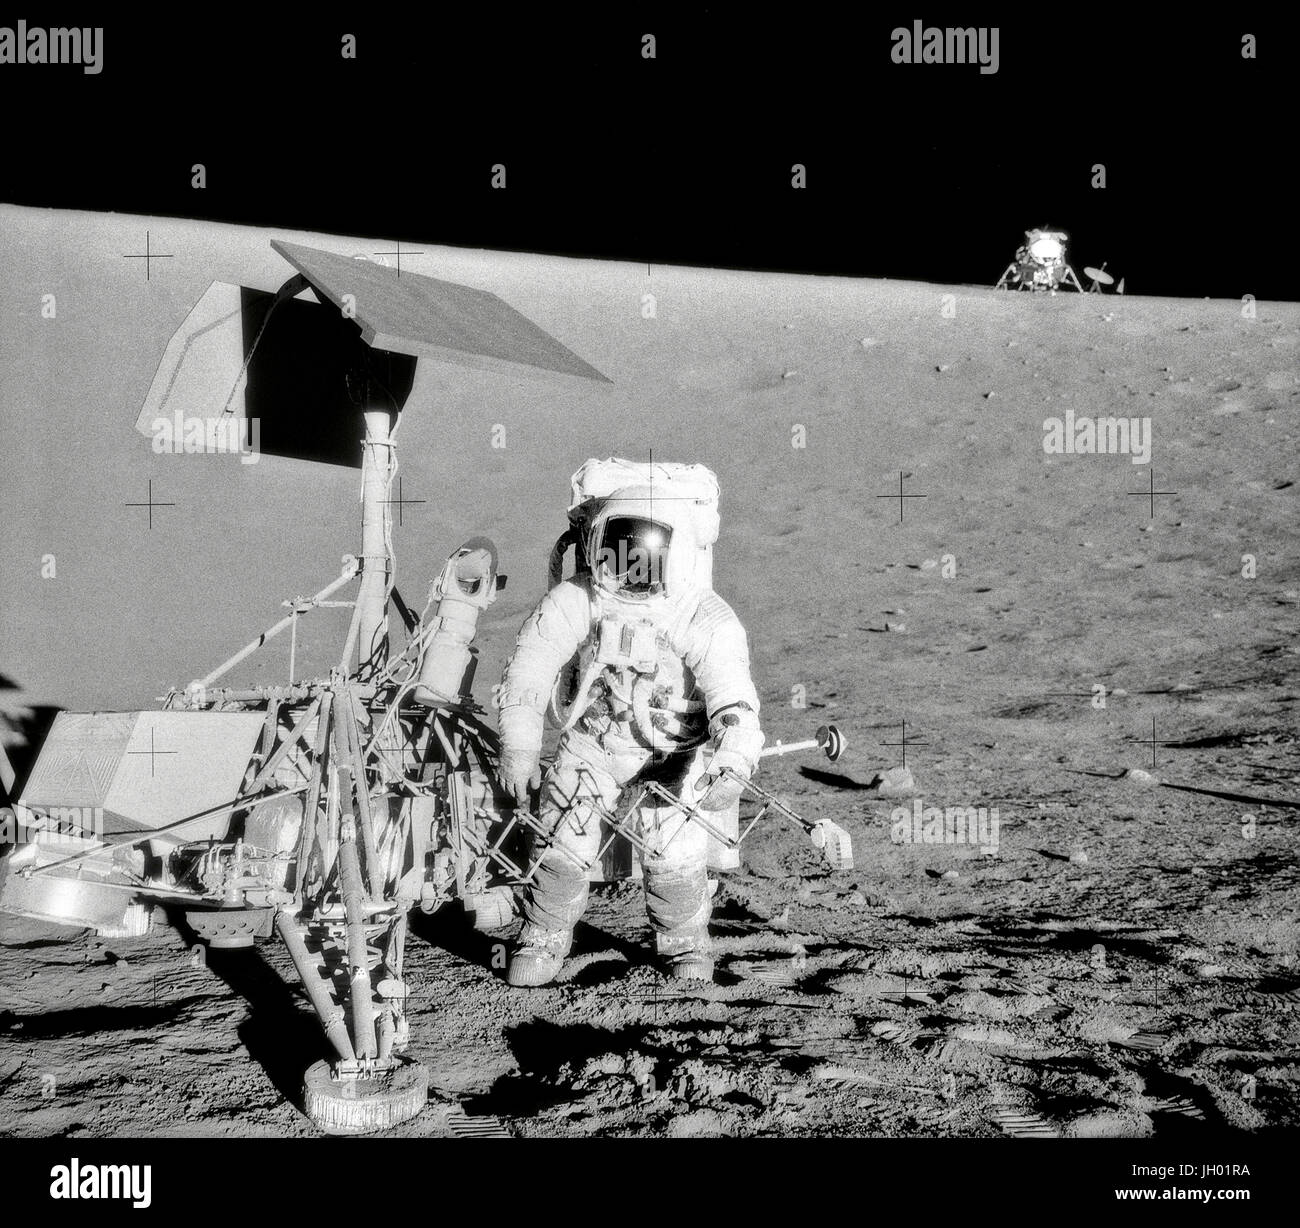 Charles Conrad Jr., Kommandant von Apollo 12, untersucht die unbemannte Raumsonde Surveyor III während der zweiten Extravehicular Activity (EVA-2). Die Mondlandefähre (LM) "Intrepid" im Hintergrund rechts ist. Dieses Bild wurde vom Astronaut Alan L. Bean, Lunar Module pilot aufgenommen. Die "Intrepid" landete auf des Mondes Ozean der Stürme nur 600 Fuß von Surveyor III. Die Fernsehkamera und mehrere andere Komponenten wurden Landvermesser III entnommen und brachte zurück auf die Erde für die wissenschaftliche Analyse. Landvermesser III auf dem Mond am 19. April 1967 zerstörte. Fotograf: NASA / Alan L. Bean Stockfoto